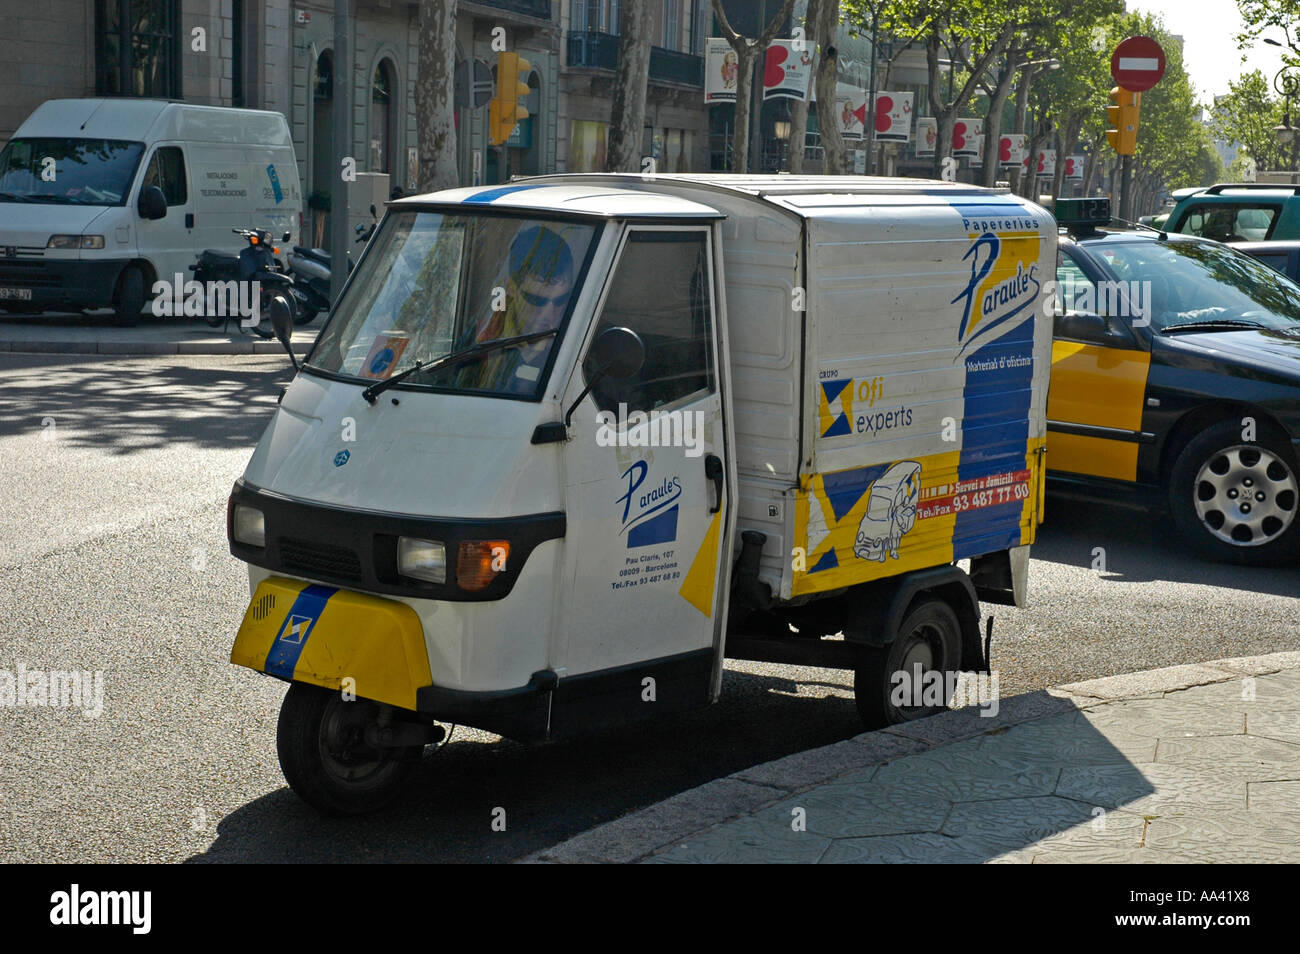 Véhicule à trois roues de transport, service de livraison, Barcelone, Catalogne, Espagne Banque D'Images